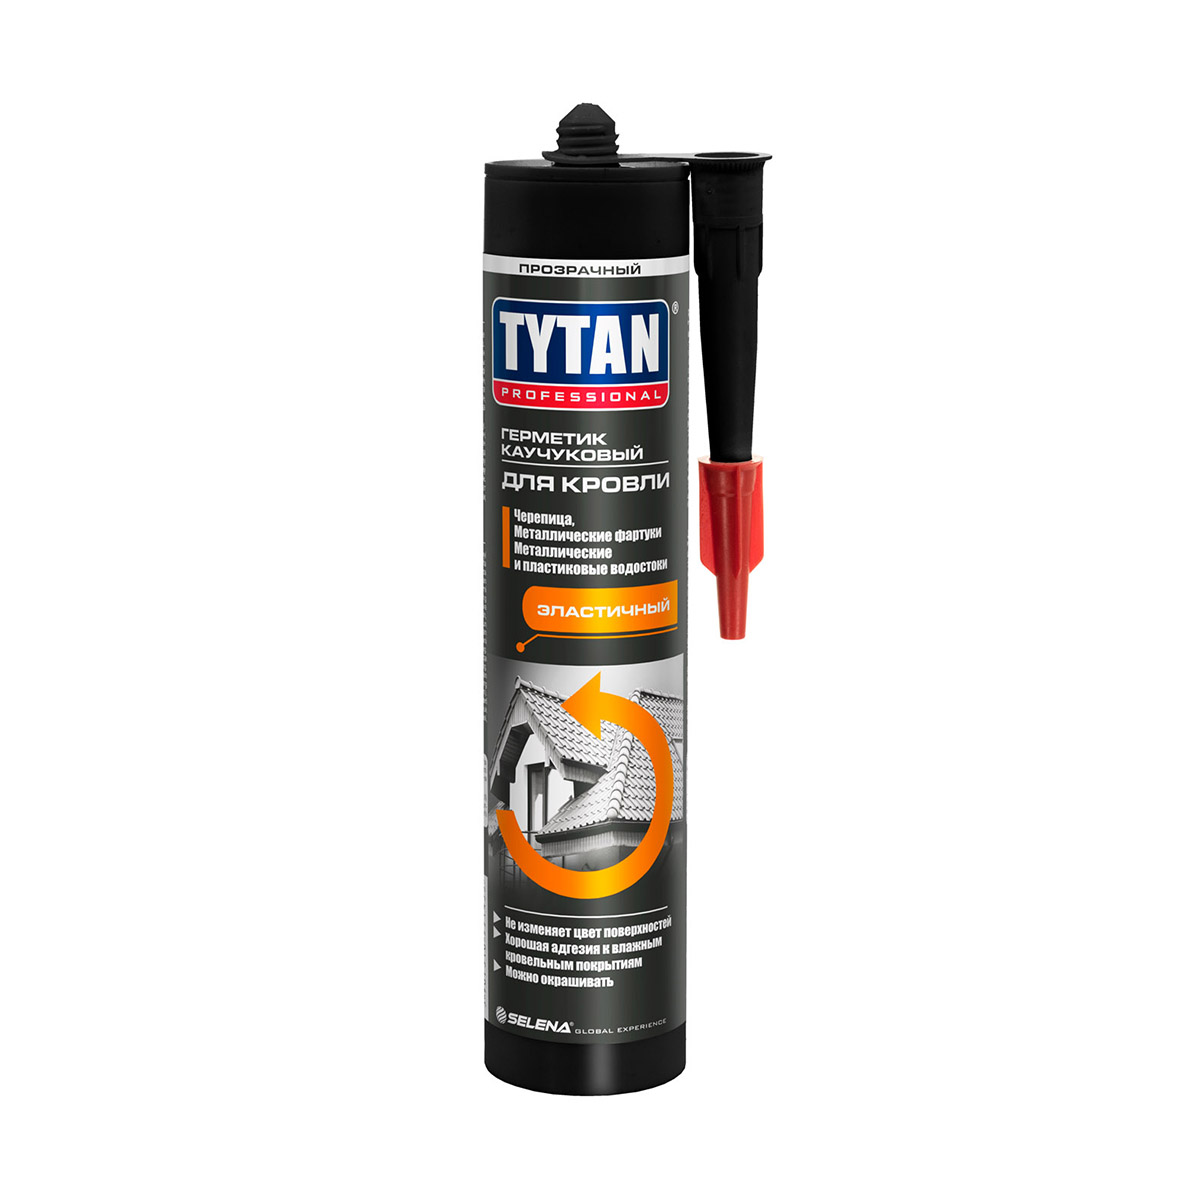 Герметик каучуковый Tytan Professional, для кровли, 310 мл, прозрачный герметик для кровли каучуковый прозр 310мл